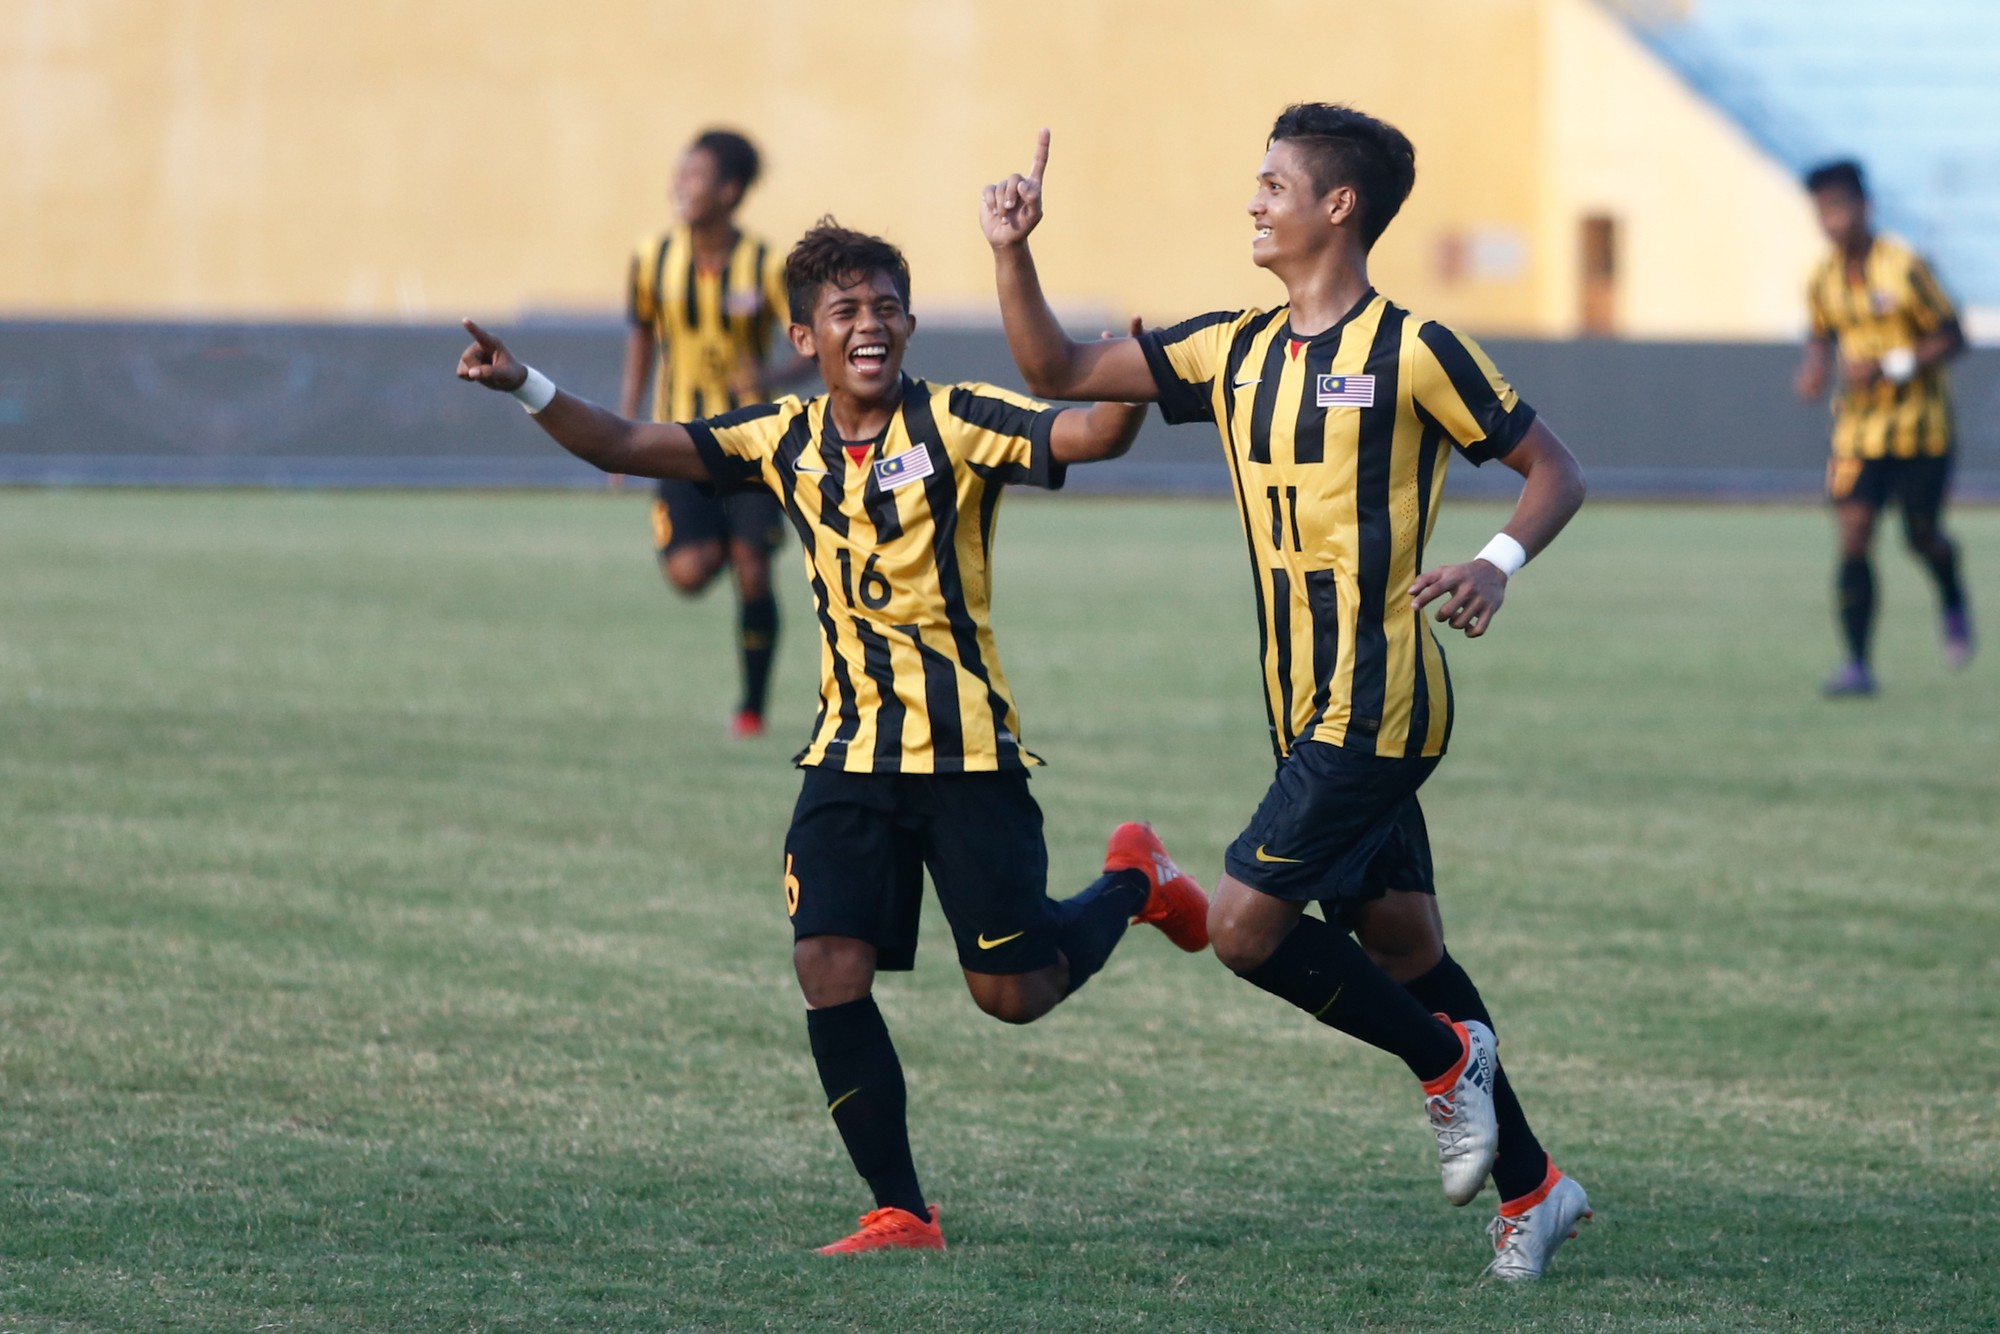 Trực tiếp VCK U19 châu Á 2018: U19 Saudi Arabia – U19 Malaysia - Ảnh 3.